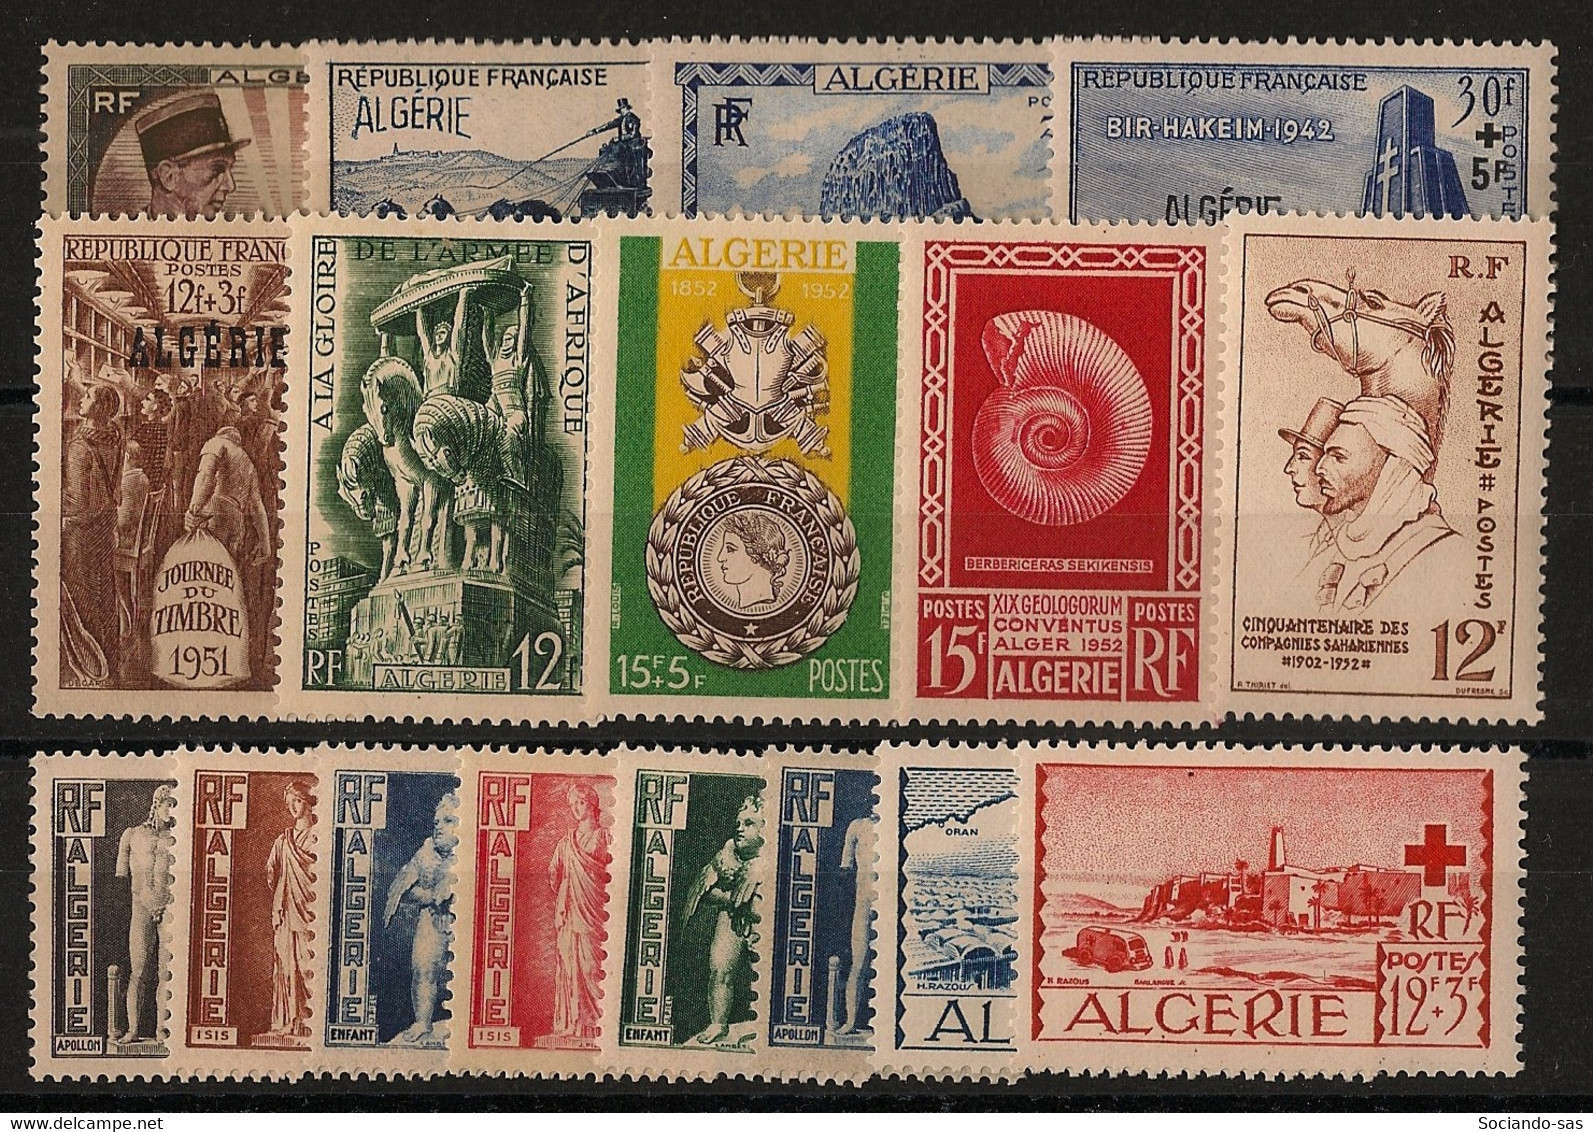 ALGERIE - Année Complète 1951-52 - N°YT. 286 à 302 - Complet - 17 Valeurs - Neuf Luxe ** / MNH / Postfrisch - Années Complètes